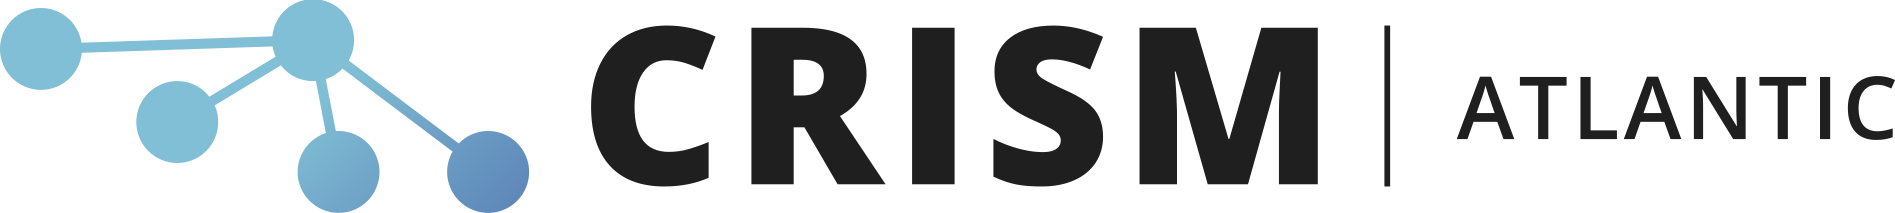 crism-atlantic-logo-short-en.png